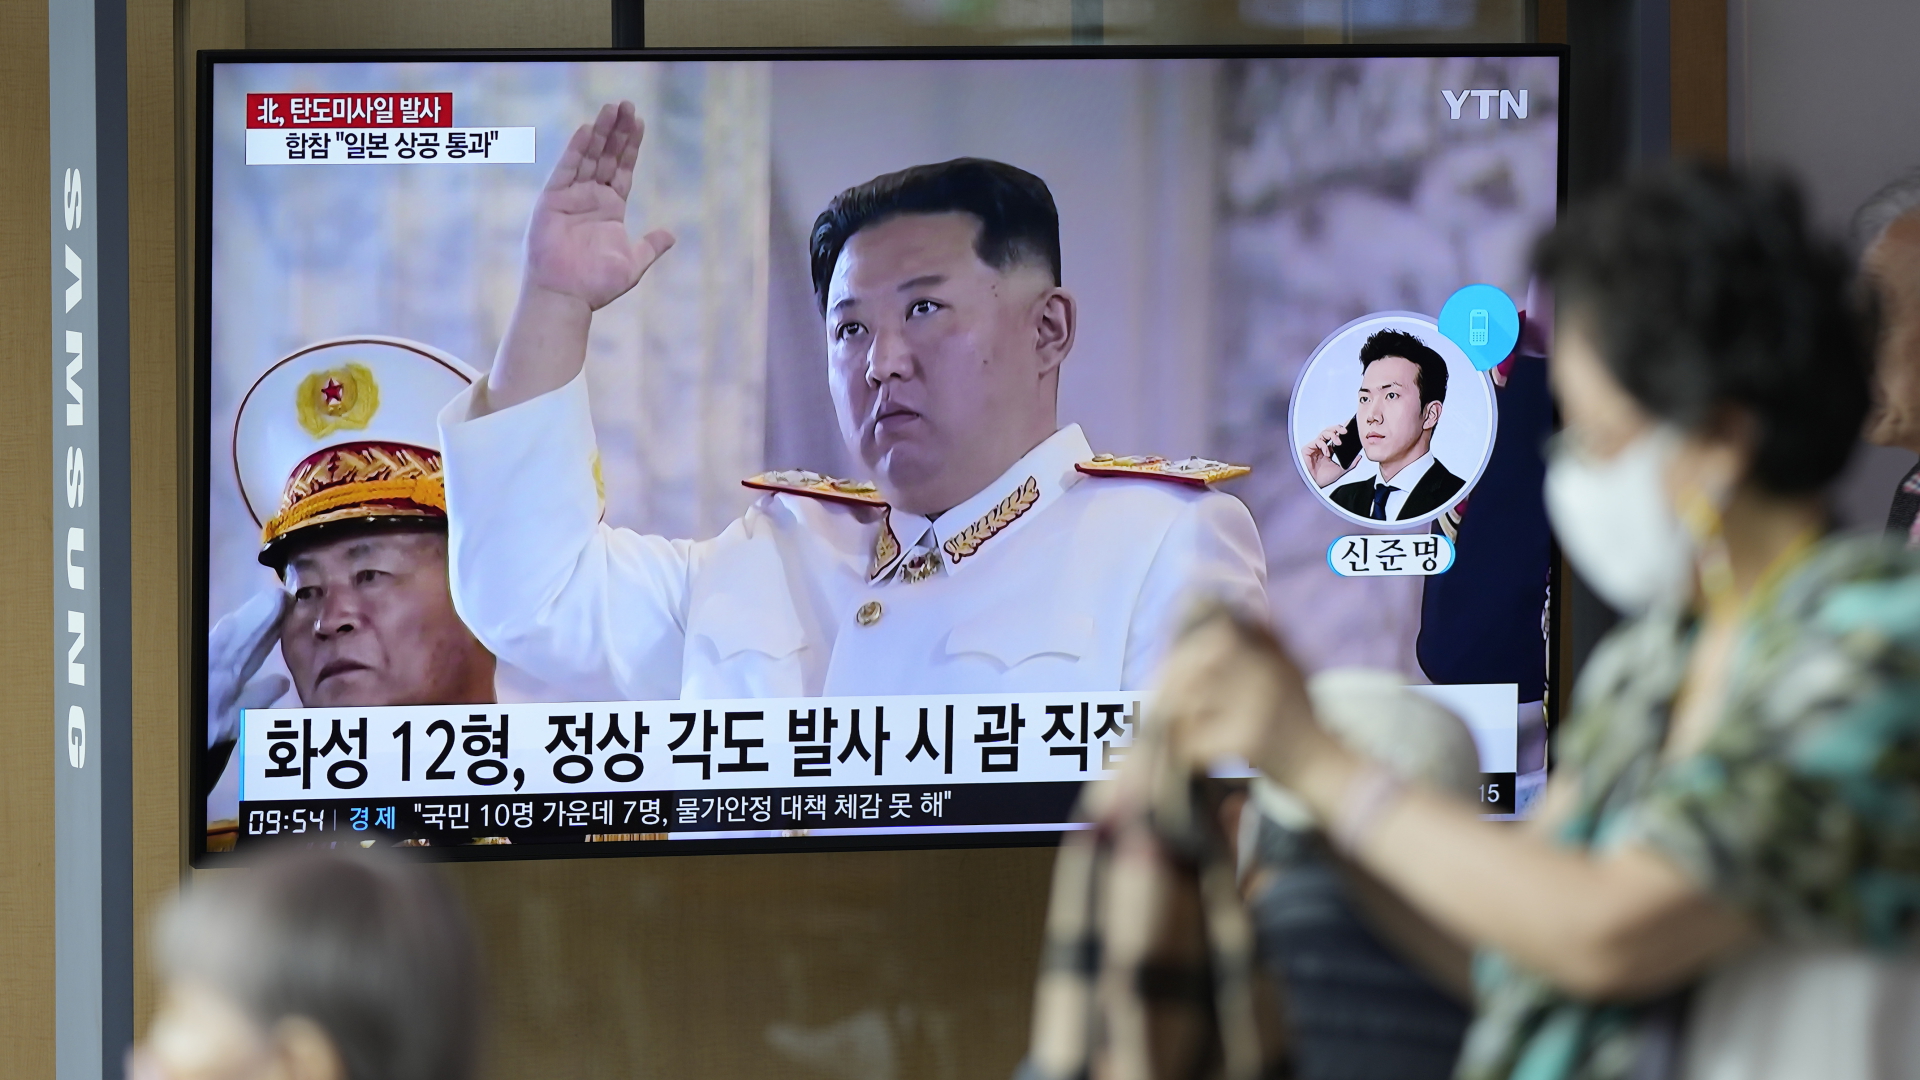 Ein Fernsehbildschirm mit einer Nachrichtensendung über den nordkoreanischen Raketenstart auf einem TV in Seoul (Südkorea) | dpa